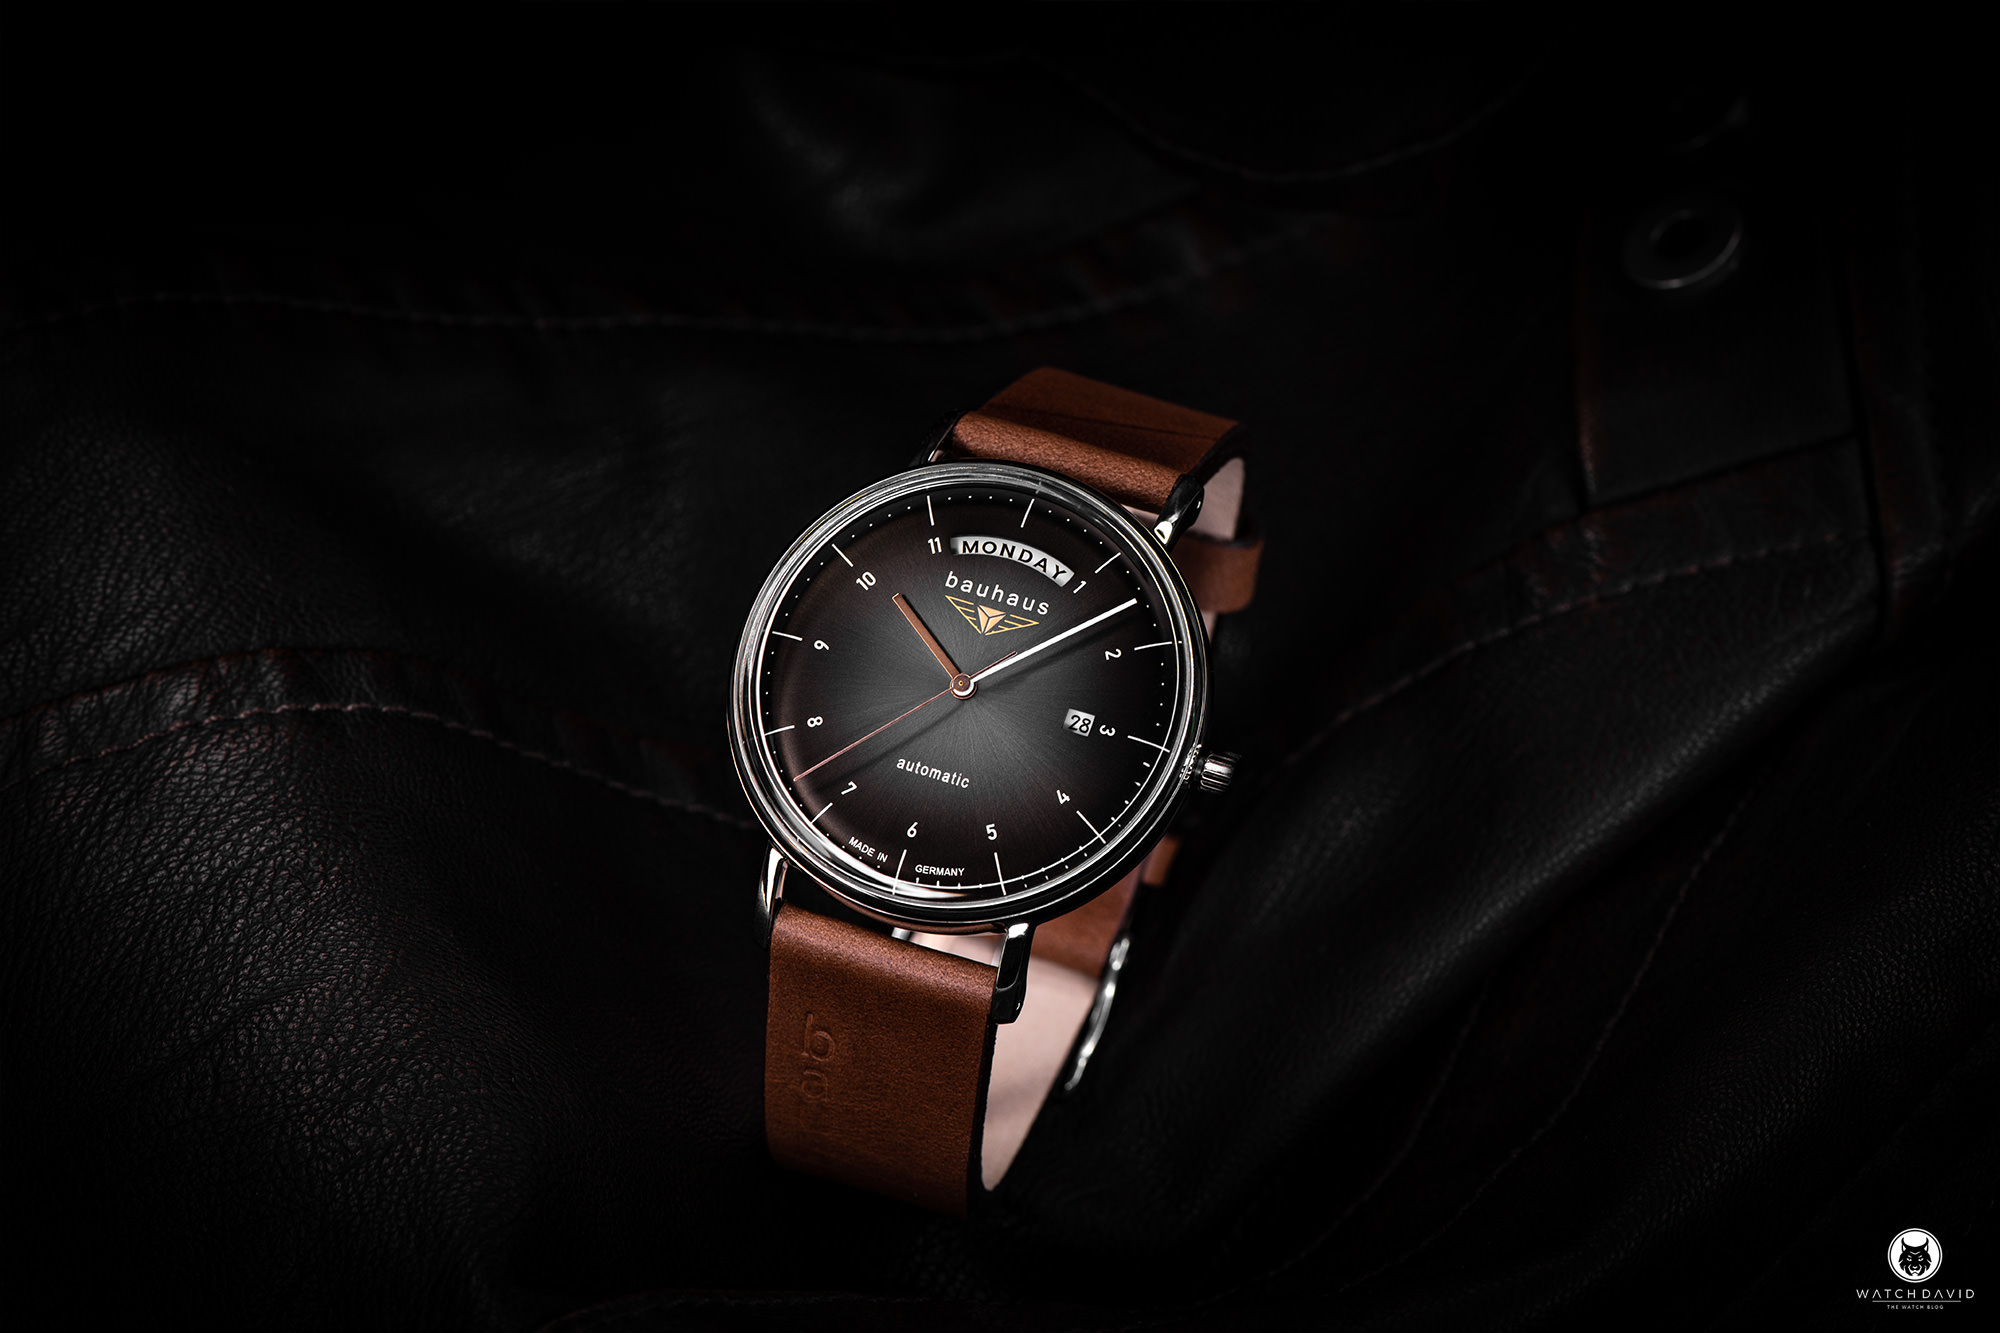 Automatic Bauhaus Watch Review – WATCHDAVID® 2162